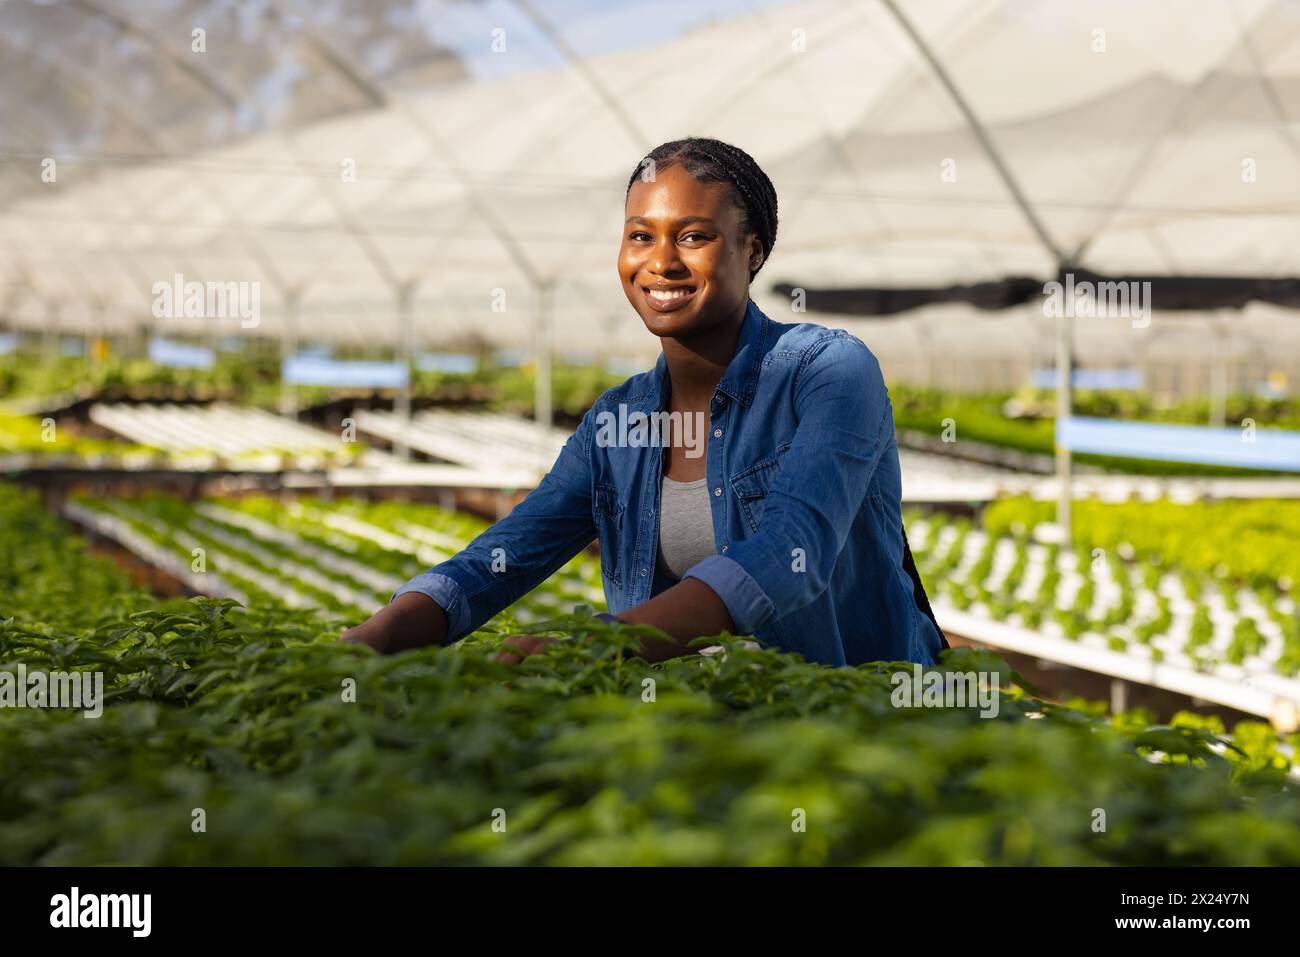 Jeune femme afro-américaine surveillante de ferme souriante, vérifiant les plantes dans la serre hydroponique. Elle a les cheveux noirs courts, portant une chemise bleue, looki Banque D'Images